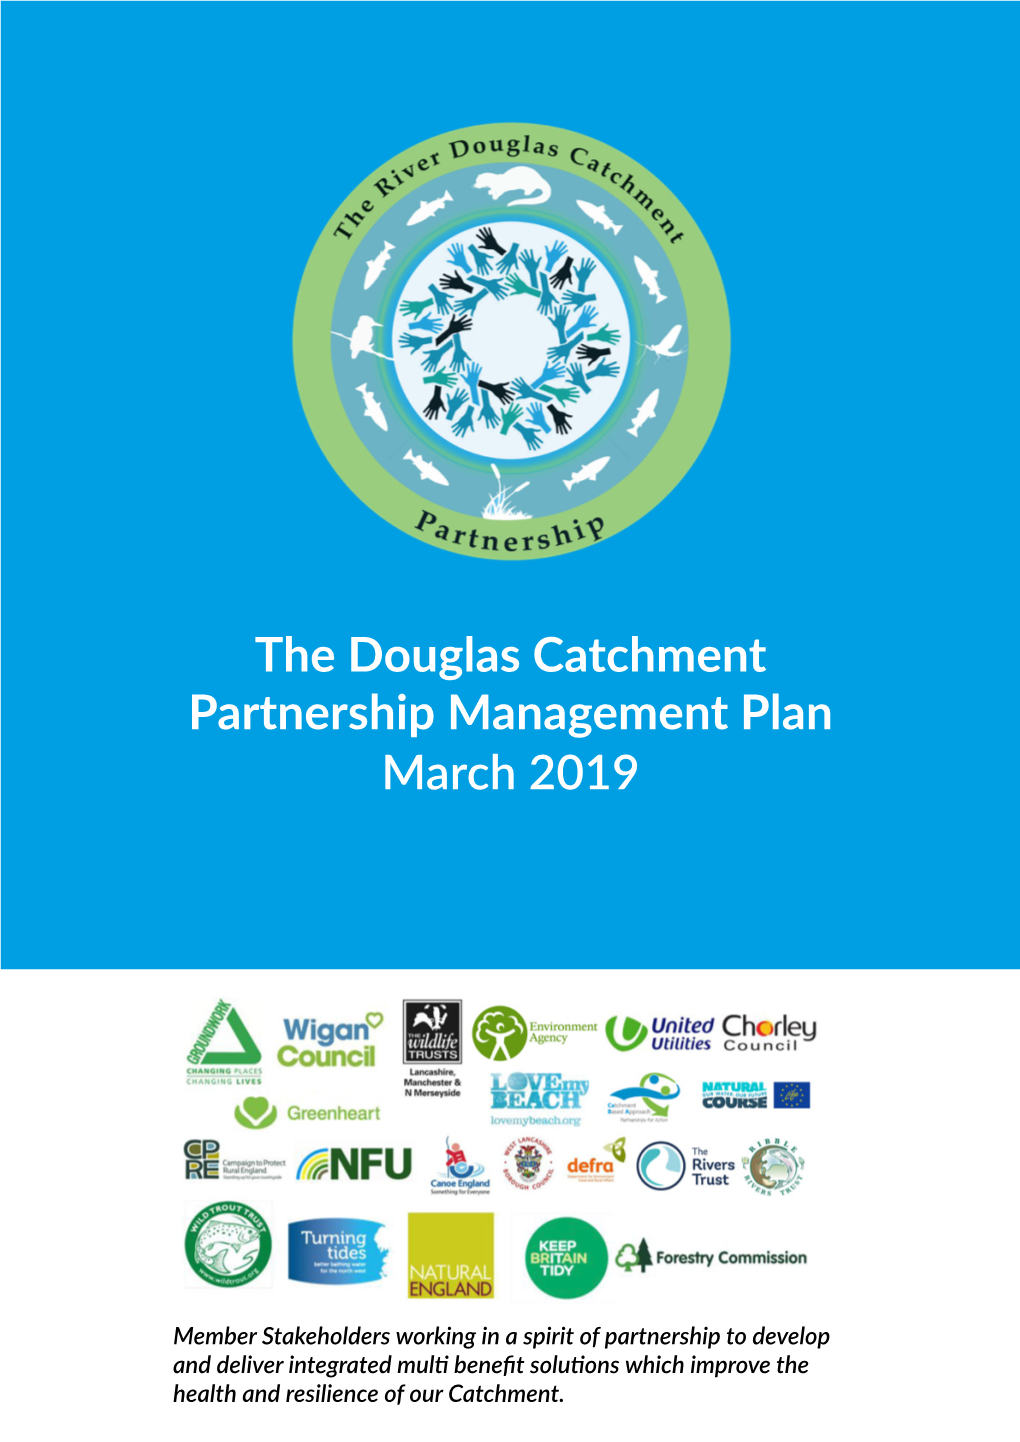 The Douglas Catchment Partnership Management Plan March 2019